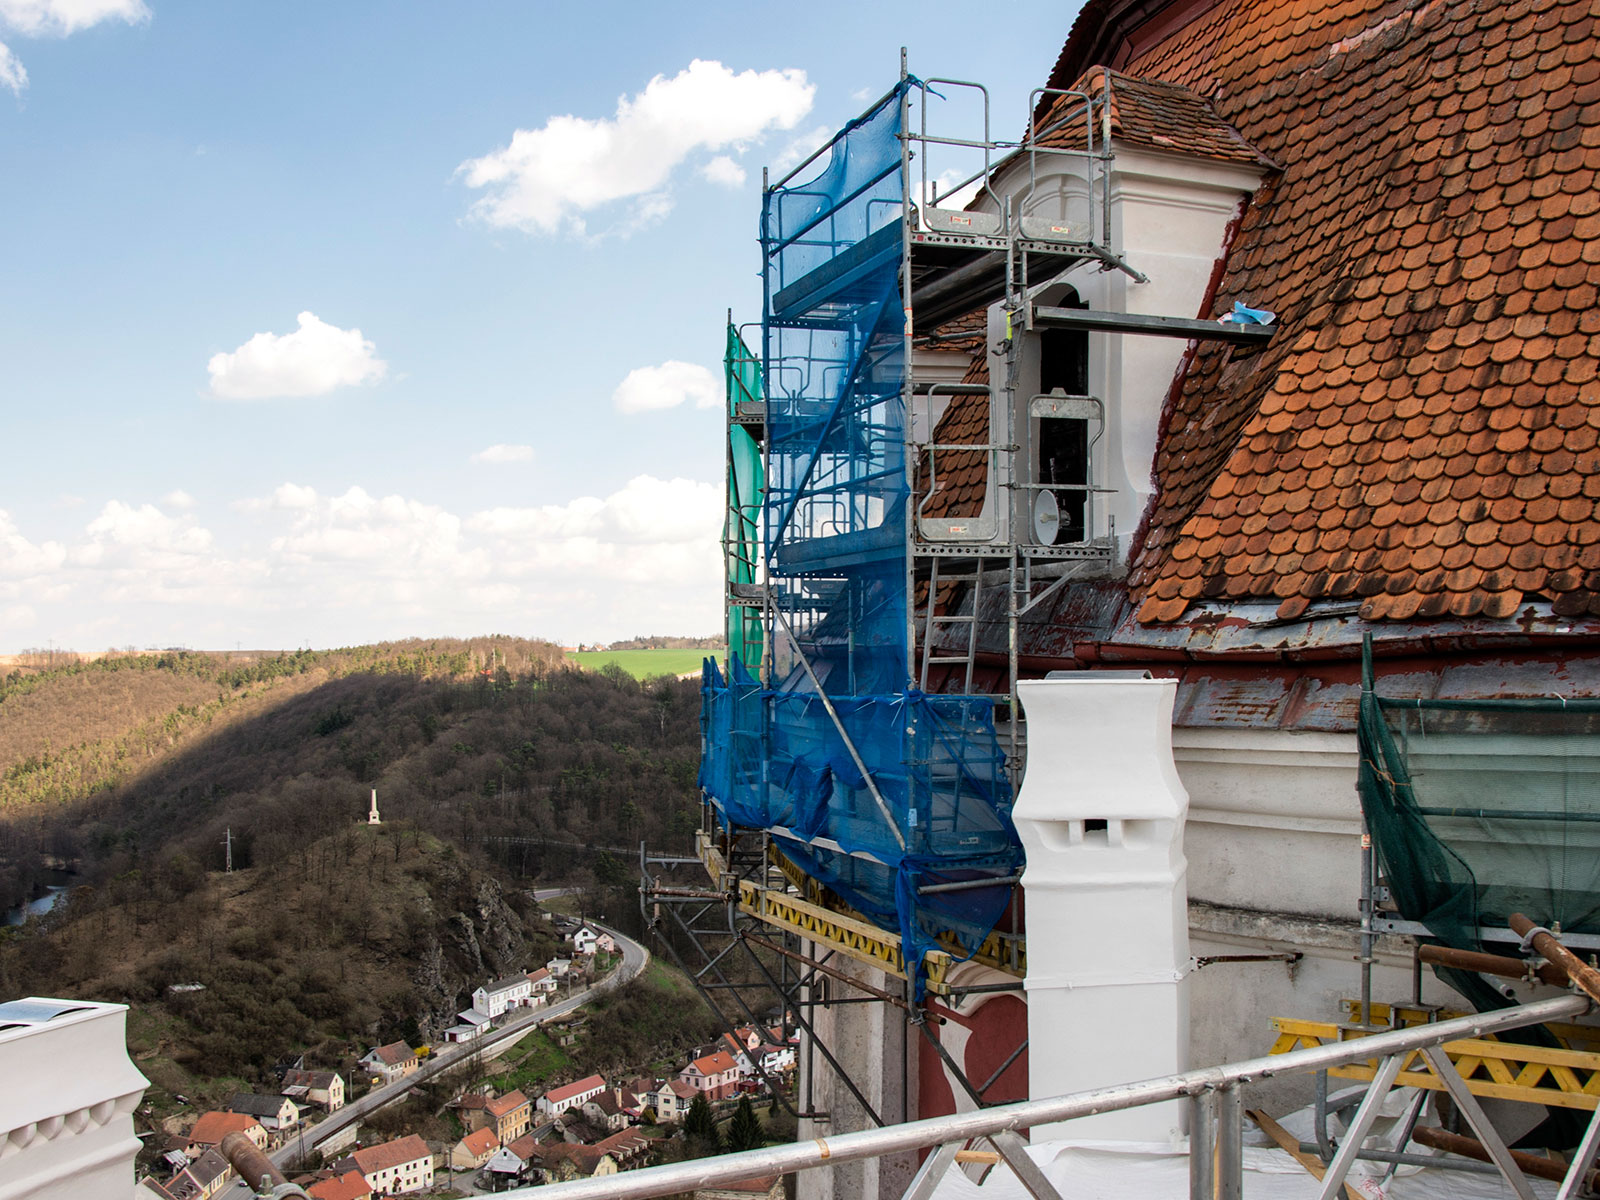 Rekonstrukce zámku Vranov nad Dyjí